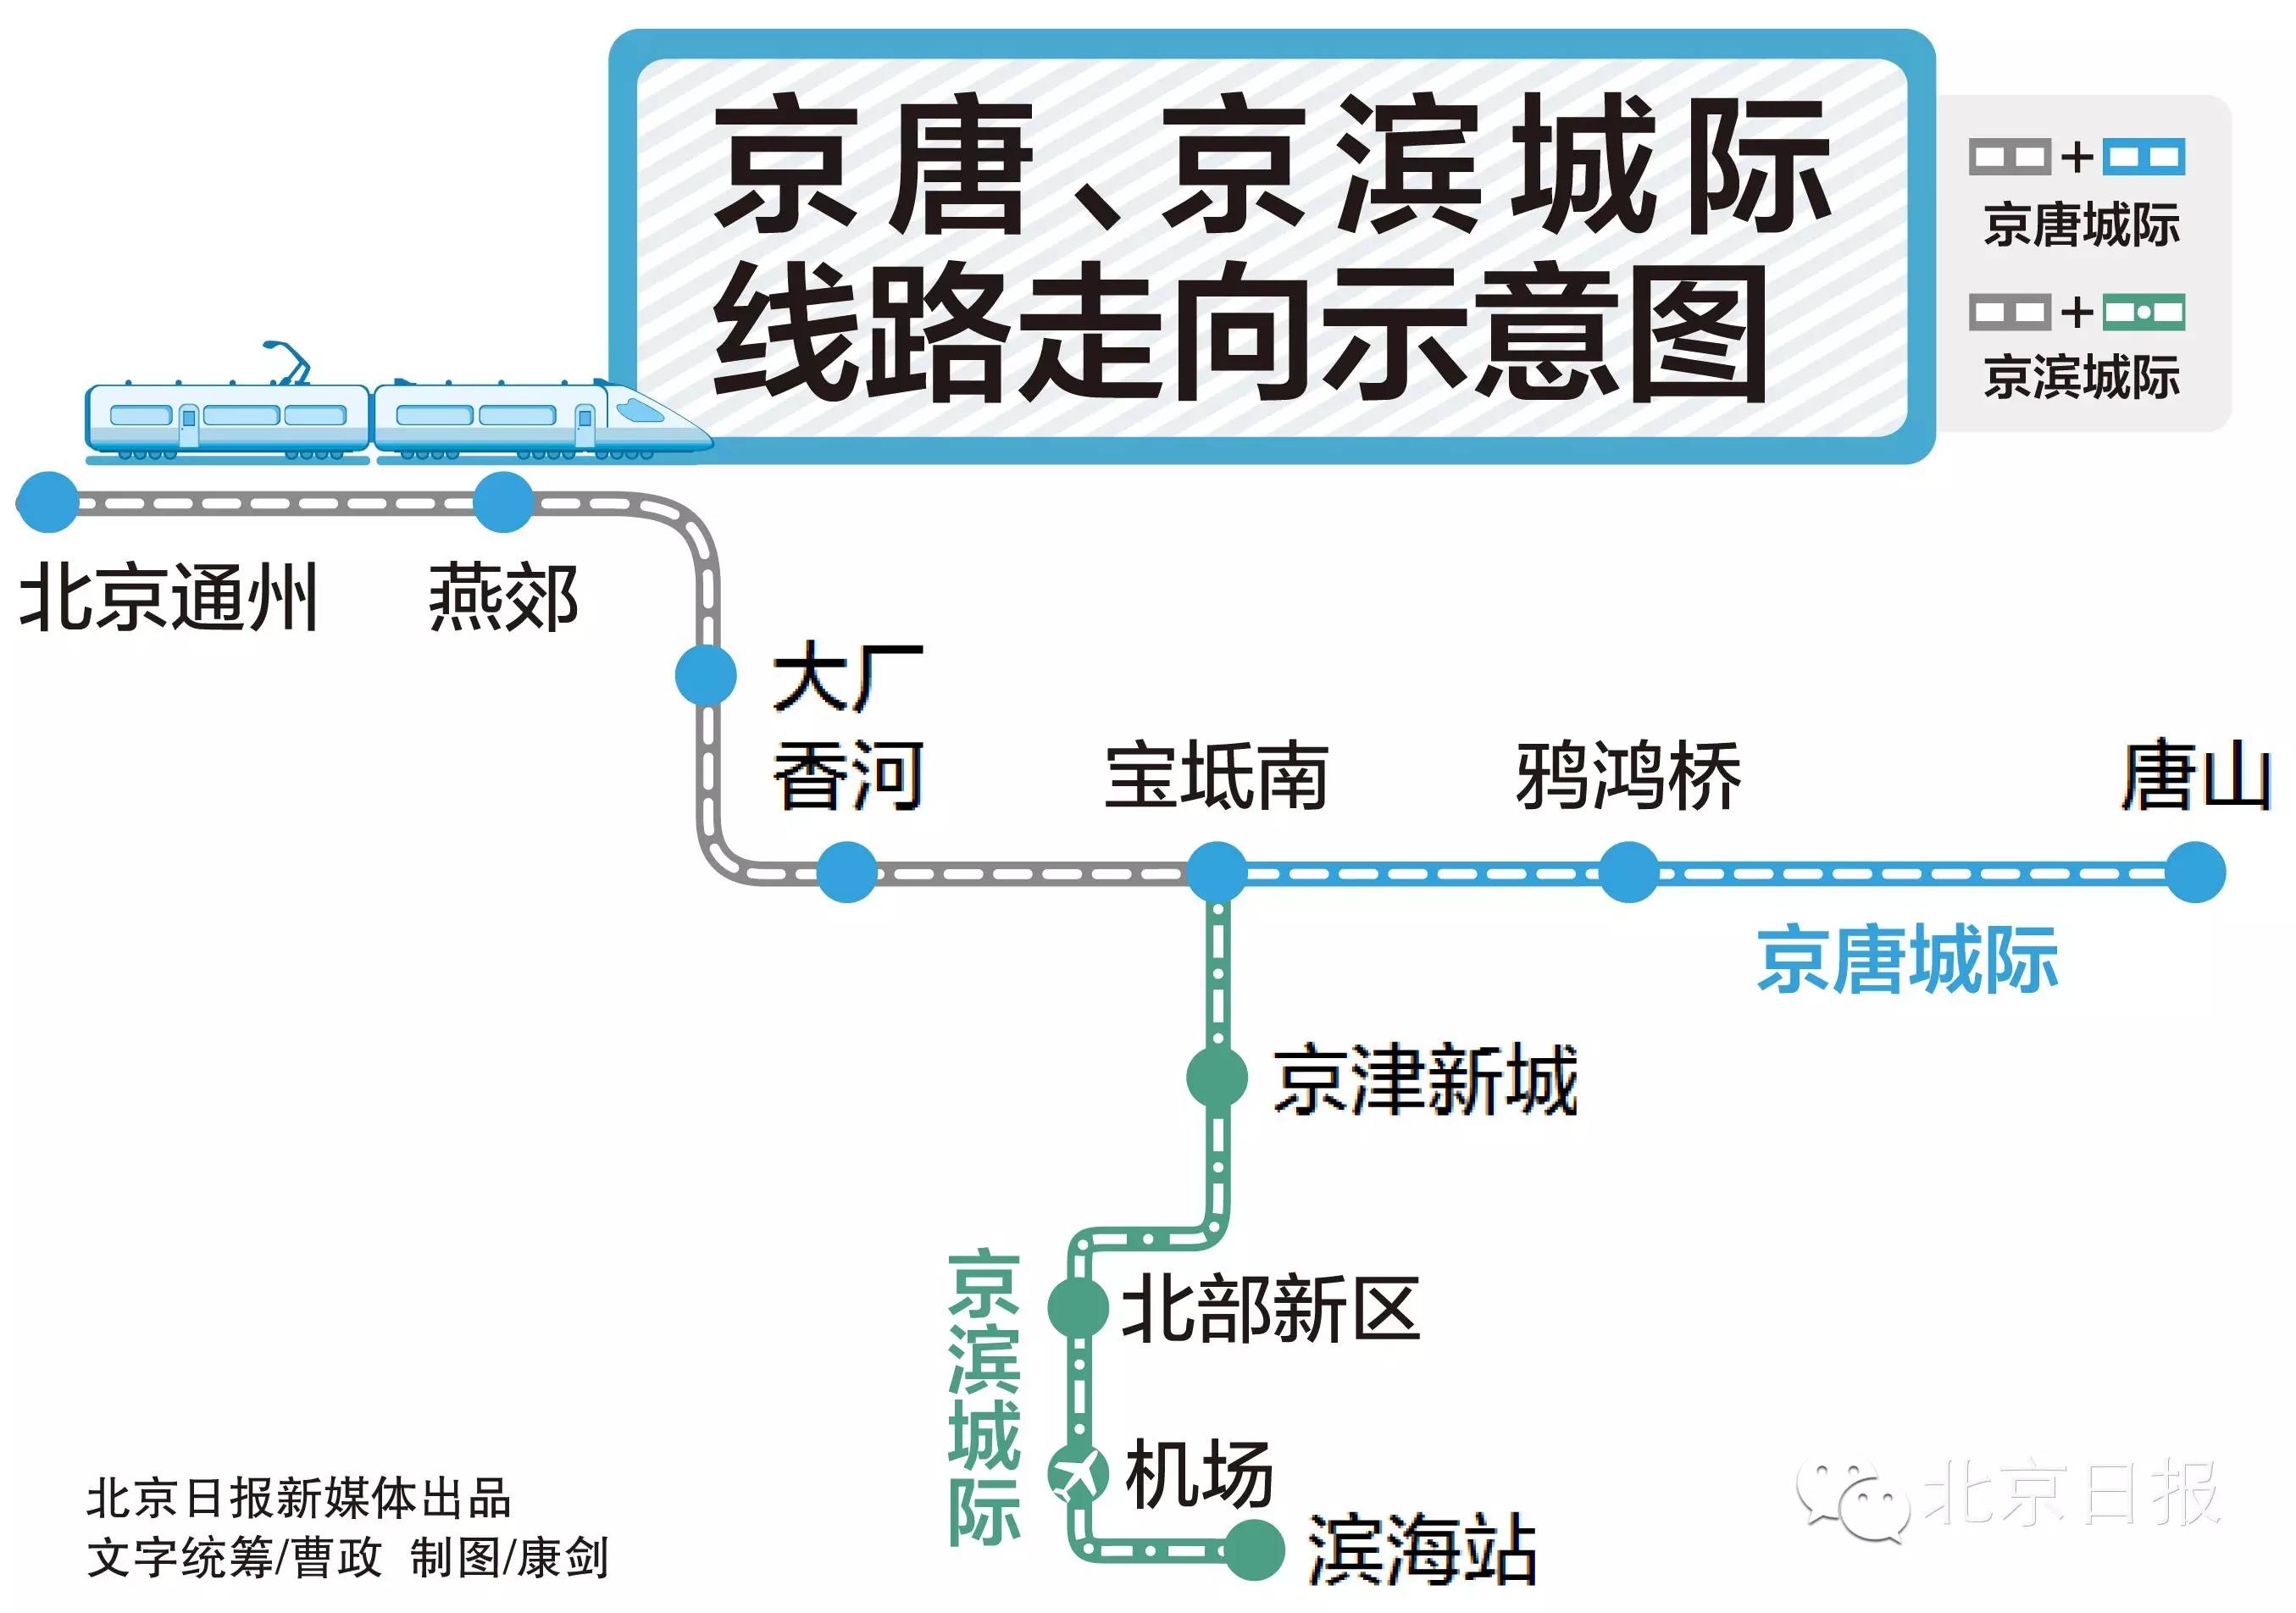 昨天,京唐,京滨两条城际铁路的先期工程正式开工,这也意味着一直处